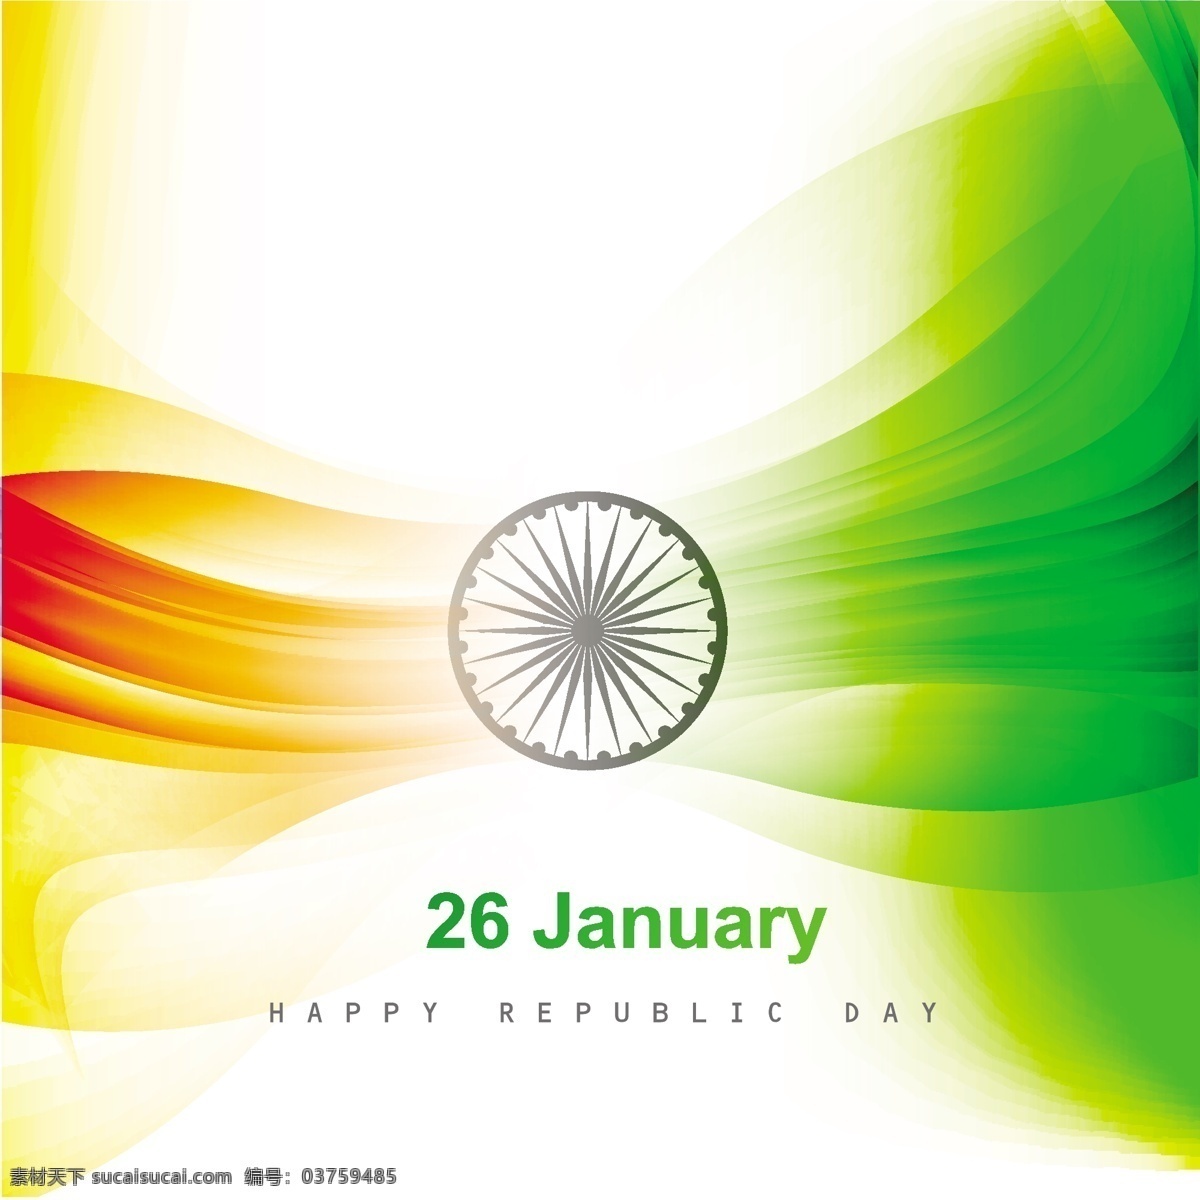 装饰 闪亮 印度 国旗 背景 抽象 波浪 节日 车轮 和平 印度国旗 独立日 国家 自由 一天 政府 有光泽 爱国 白色